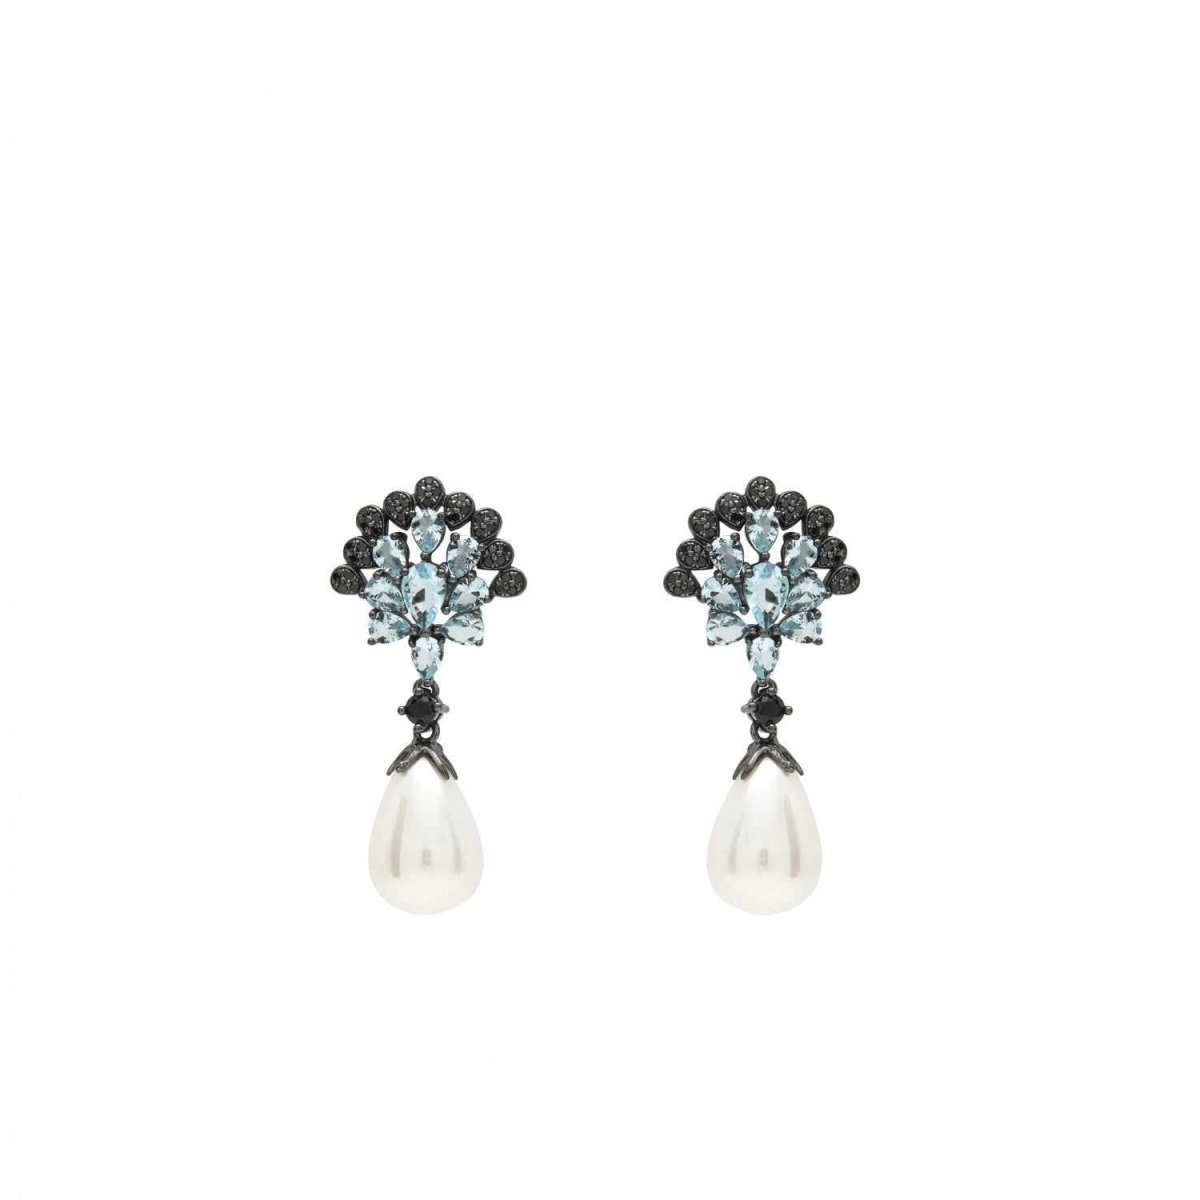 Pendiente · Pendientes perla colgante diseño gemas negras y azules